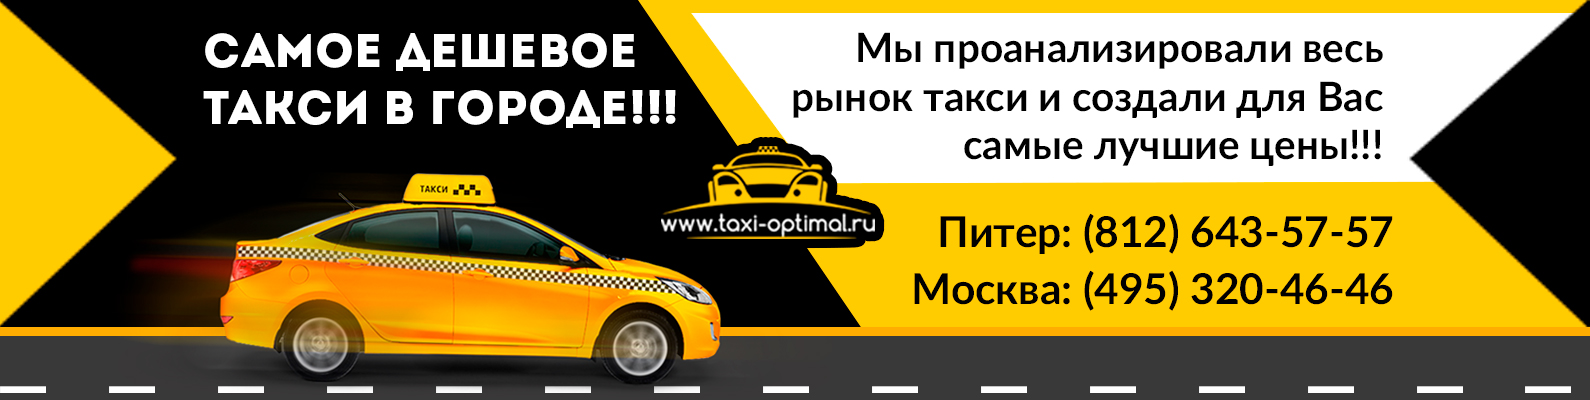 Номер телефона новосибирского такси. Такси Агидель. Такси Оптимал. Муниципальное такси. Такси Агидель номер.